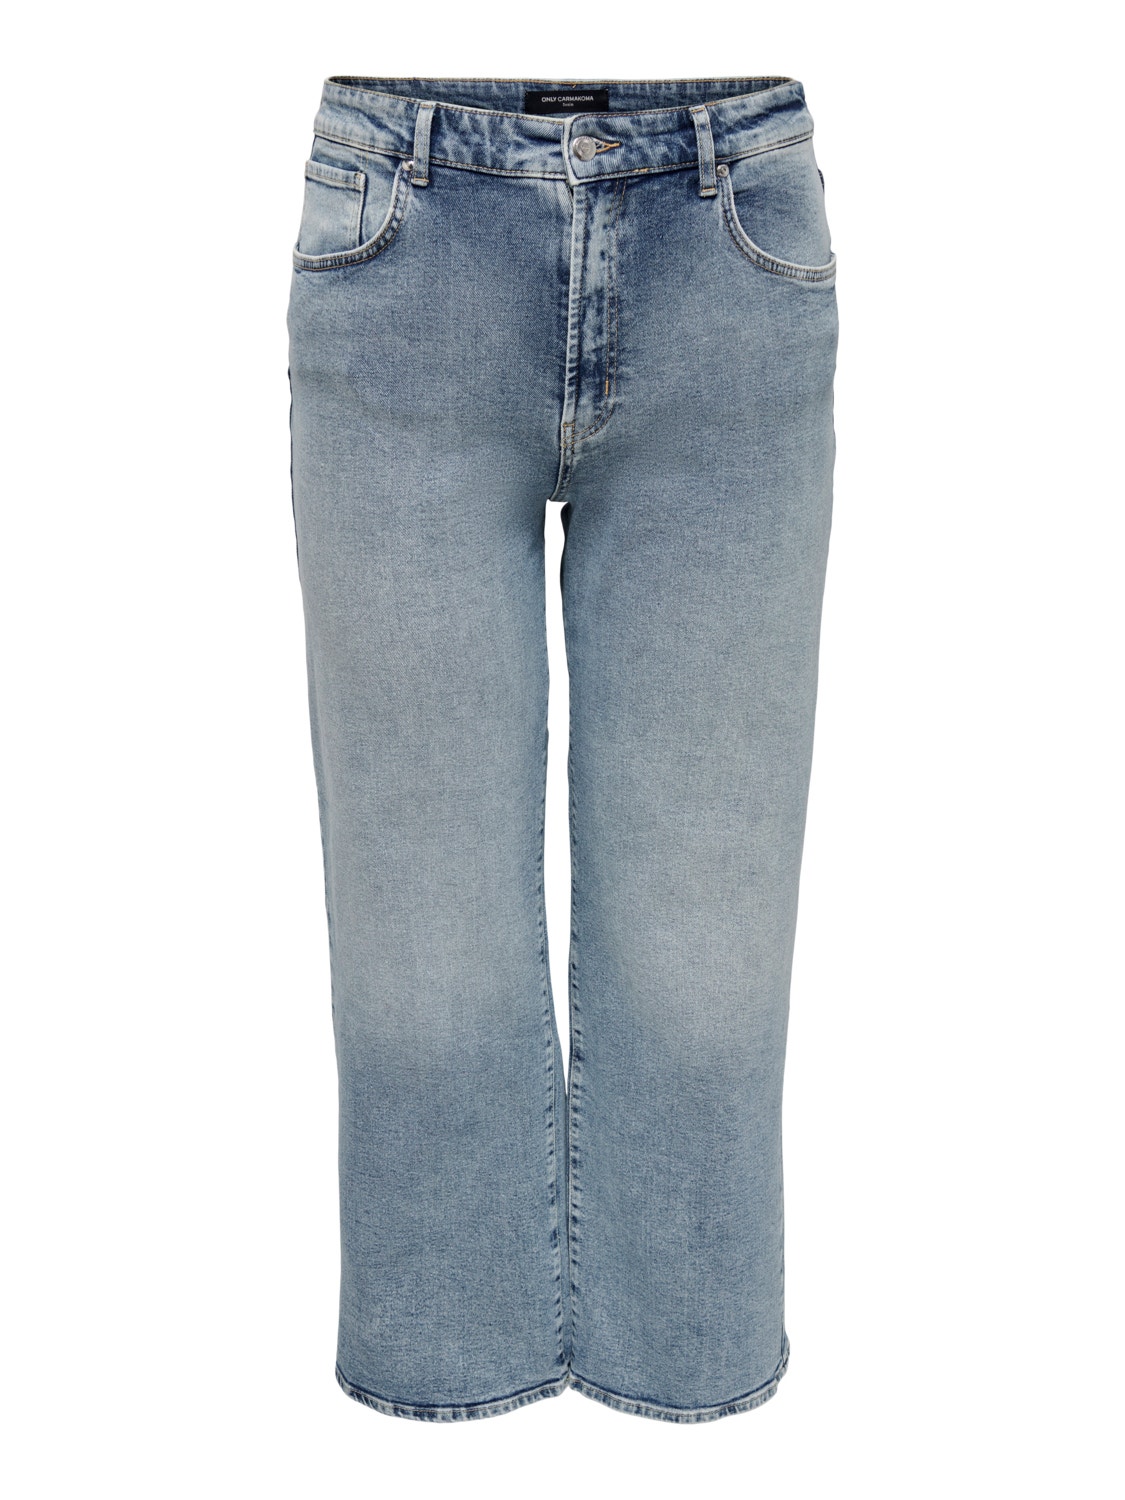 ONLY Curvy CARHope Wide Leg High Waist Jeans -Light Blue Denim - 15253611